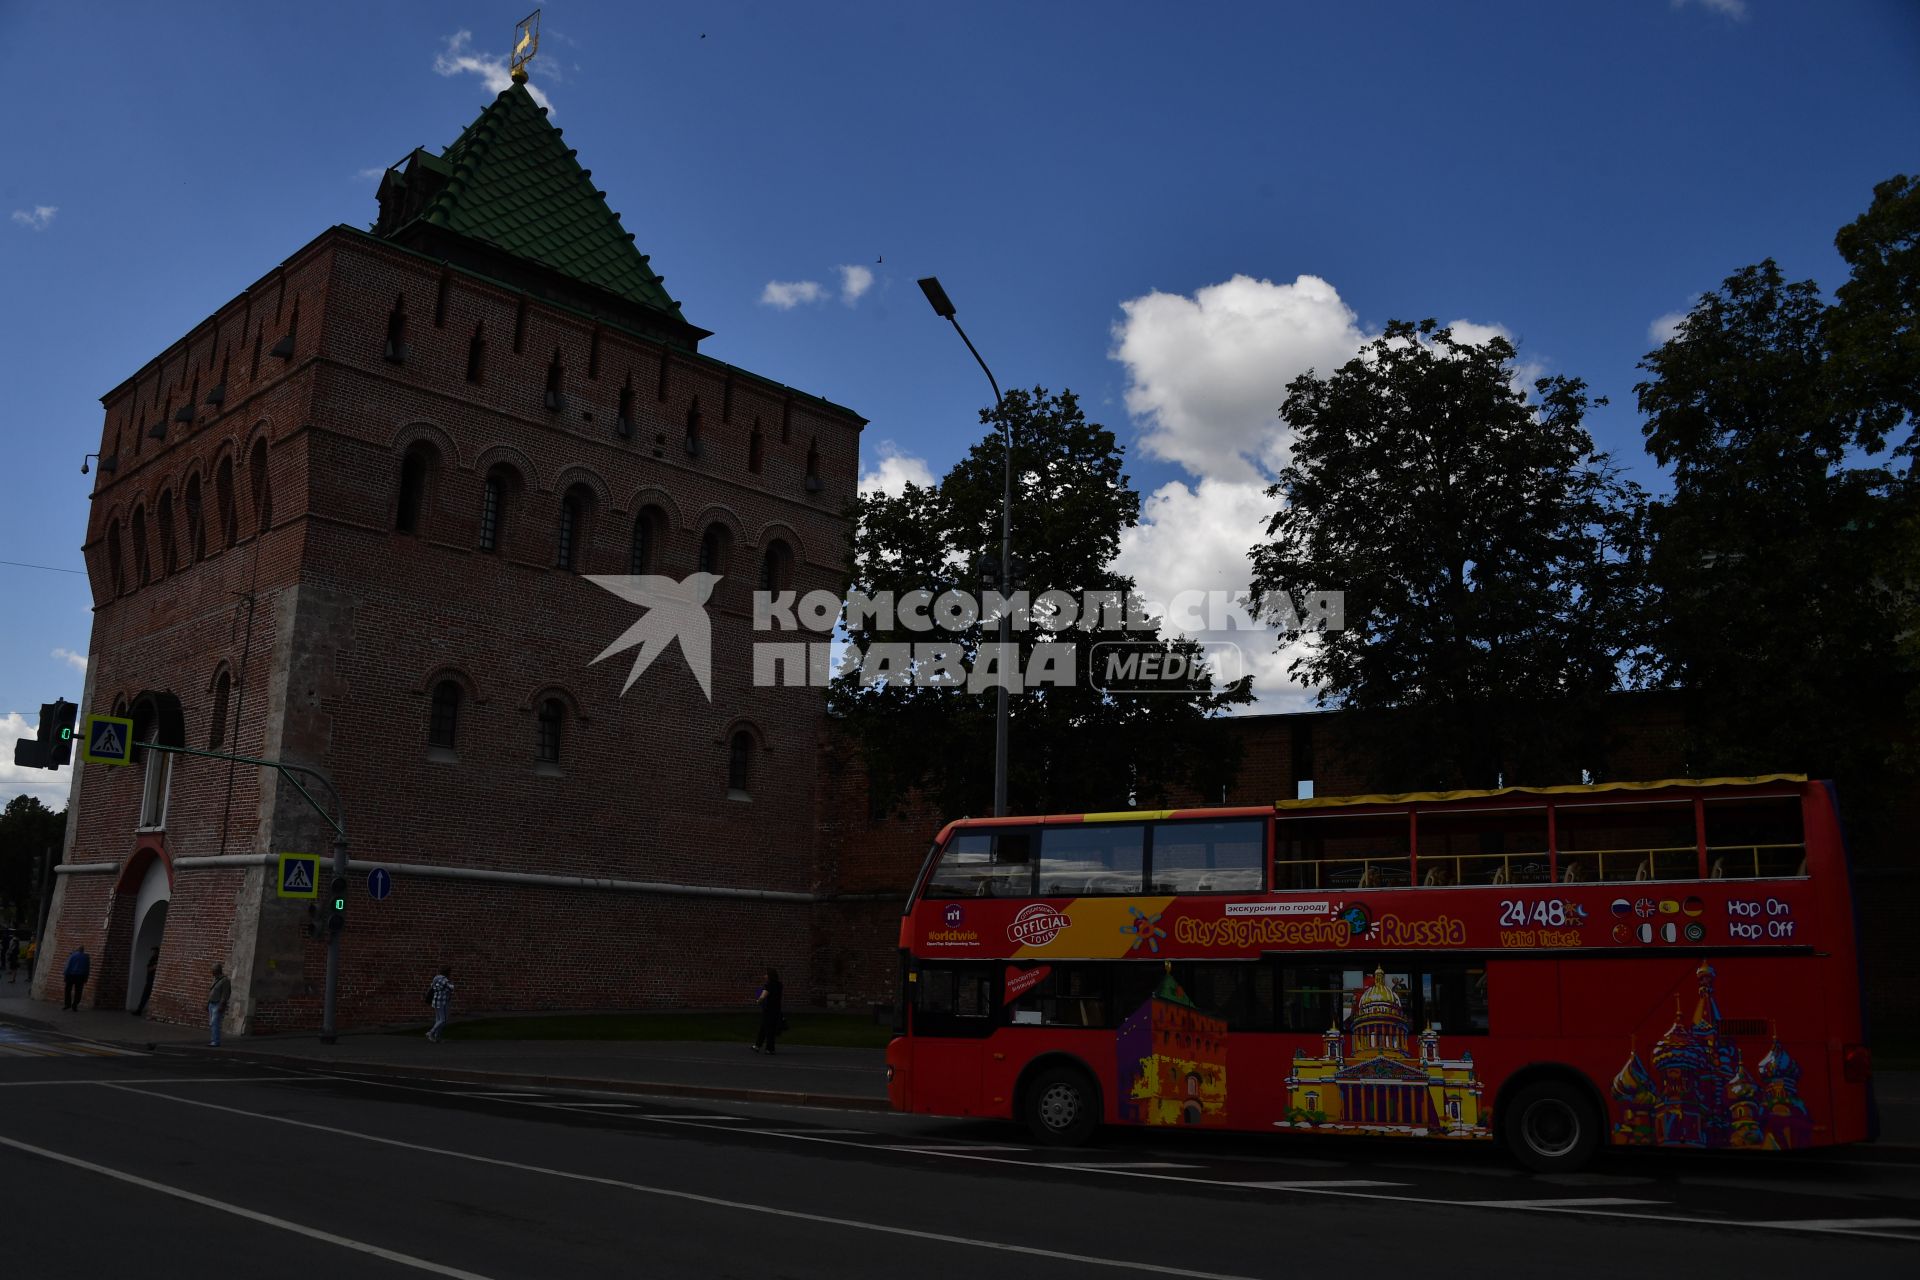 Нижний Новгород. Экскурсионный автобус рядом с Дмитриевской башней Нижегородского кремля.